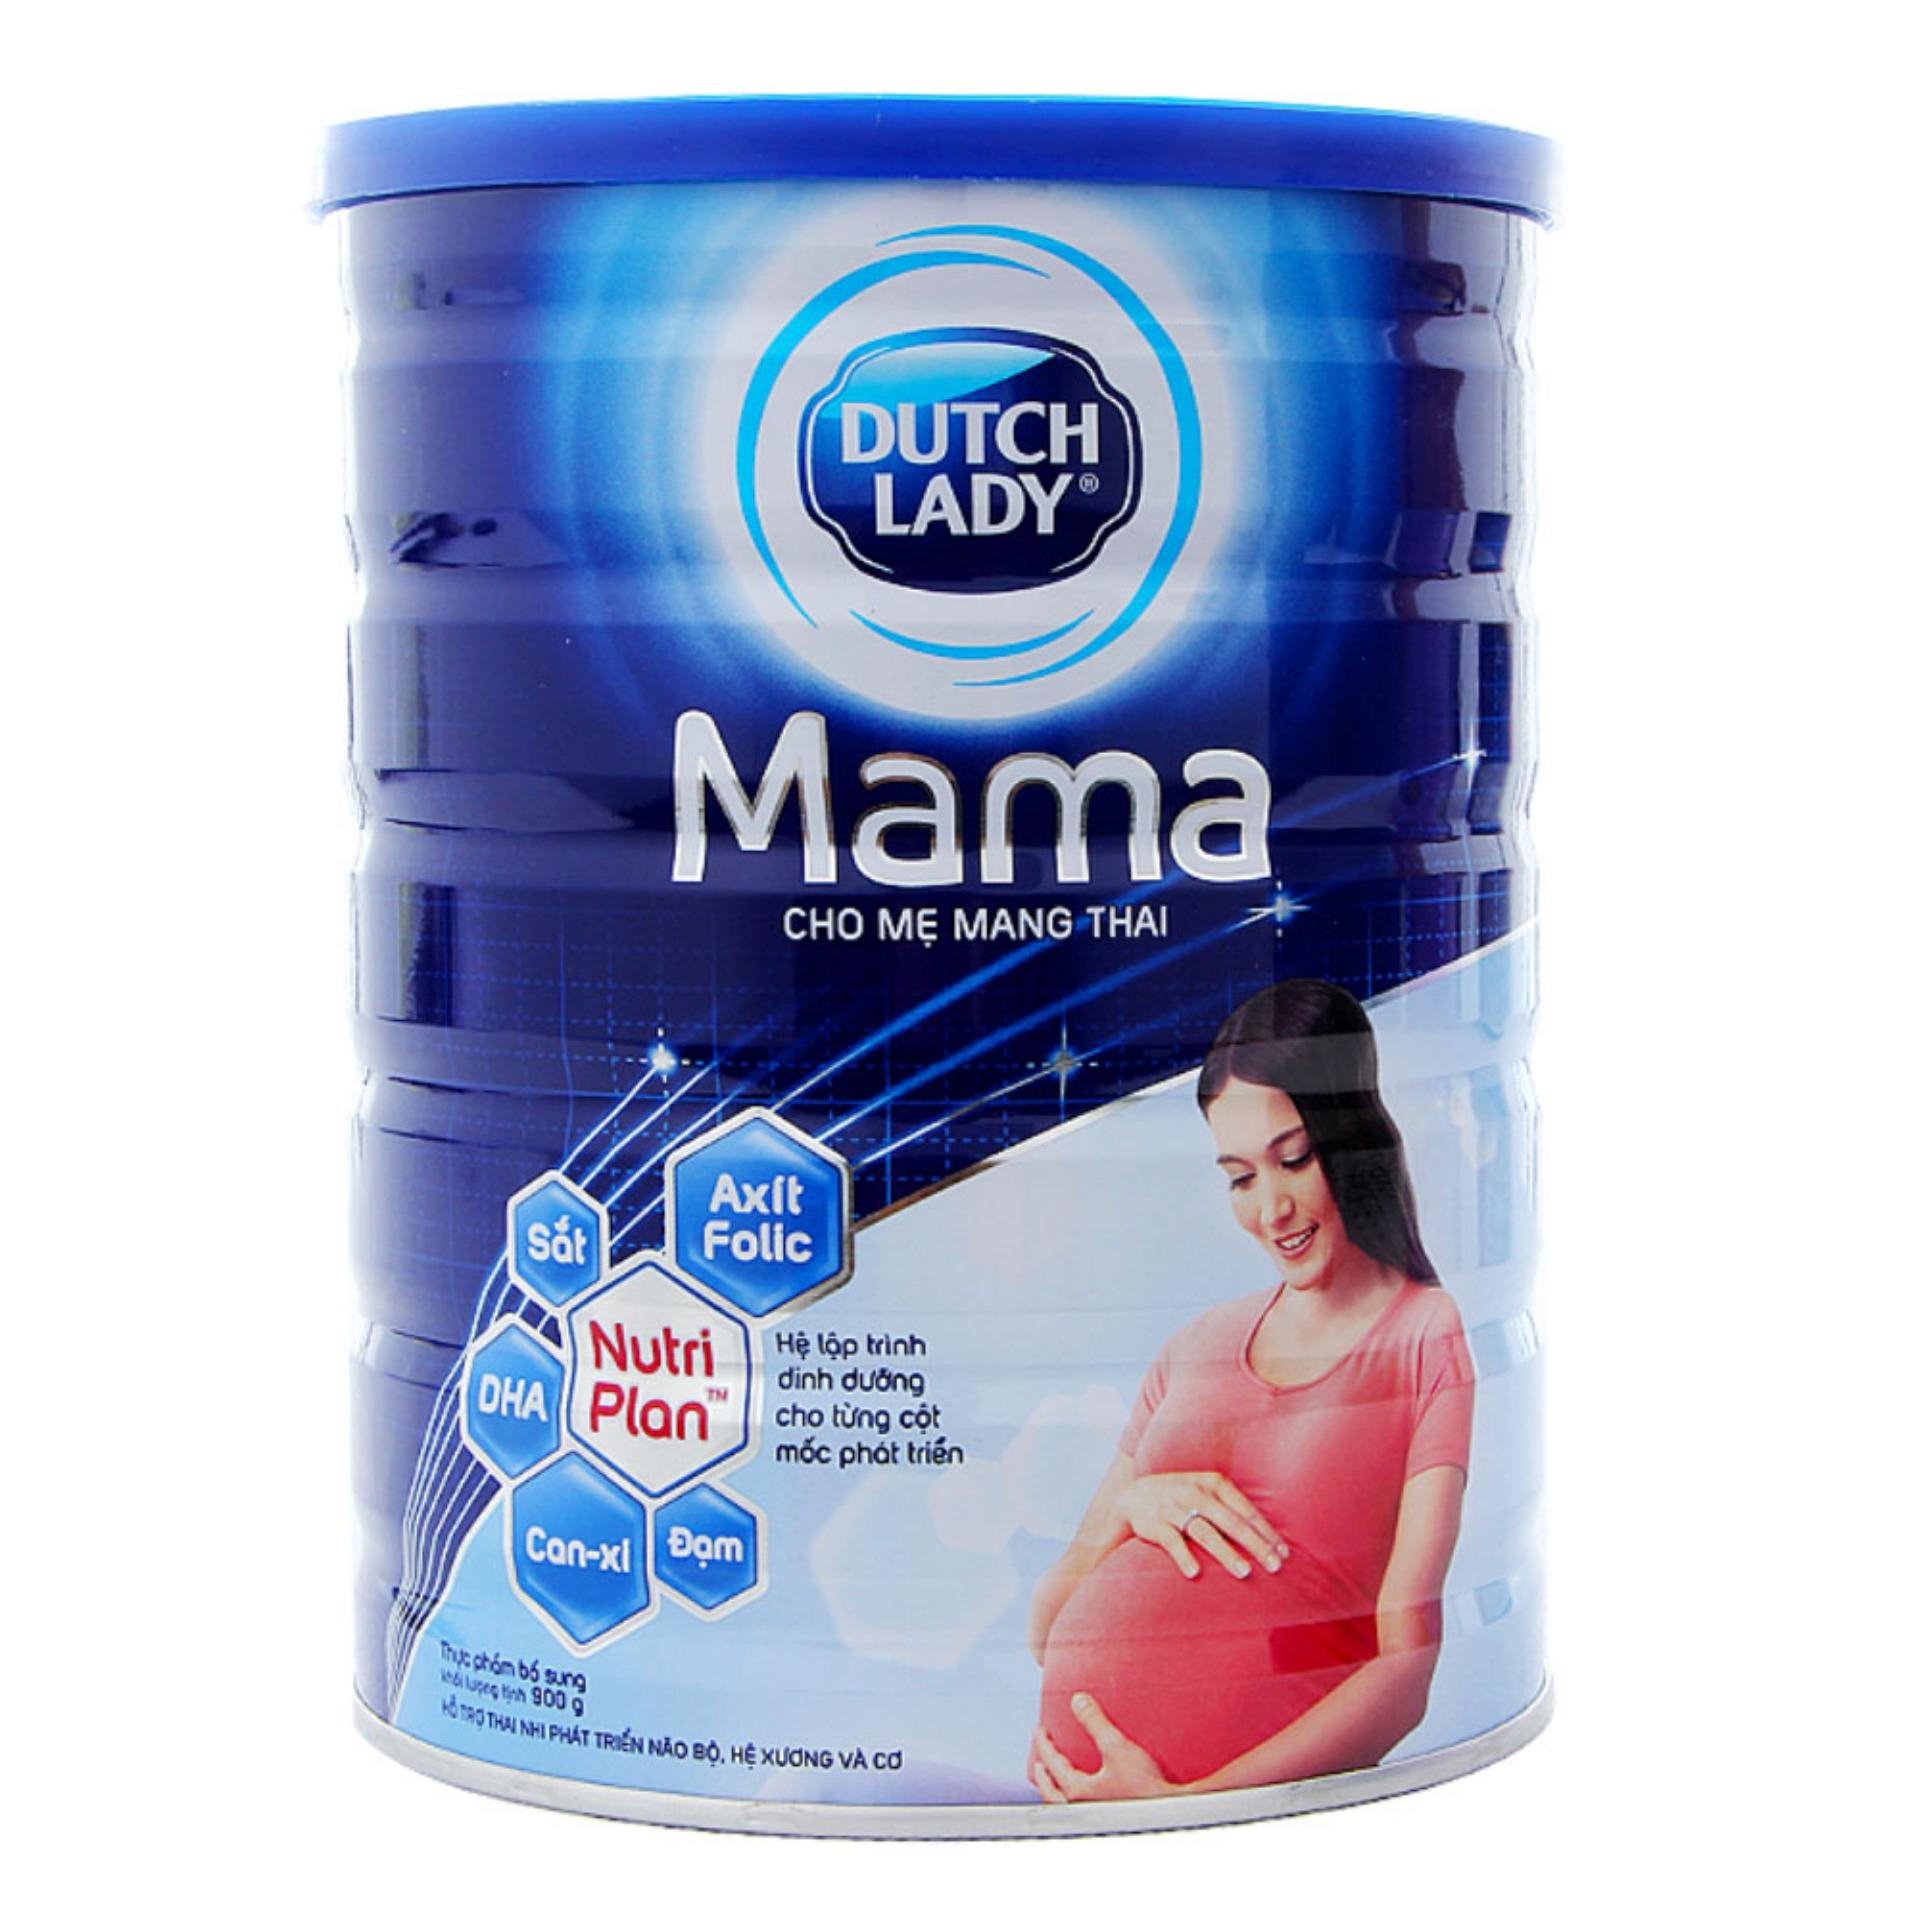 Dutch Lady Mama với những dưỡng chất như sắt, DHA, canxi,... tốt cho mẹ và bé